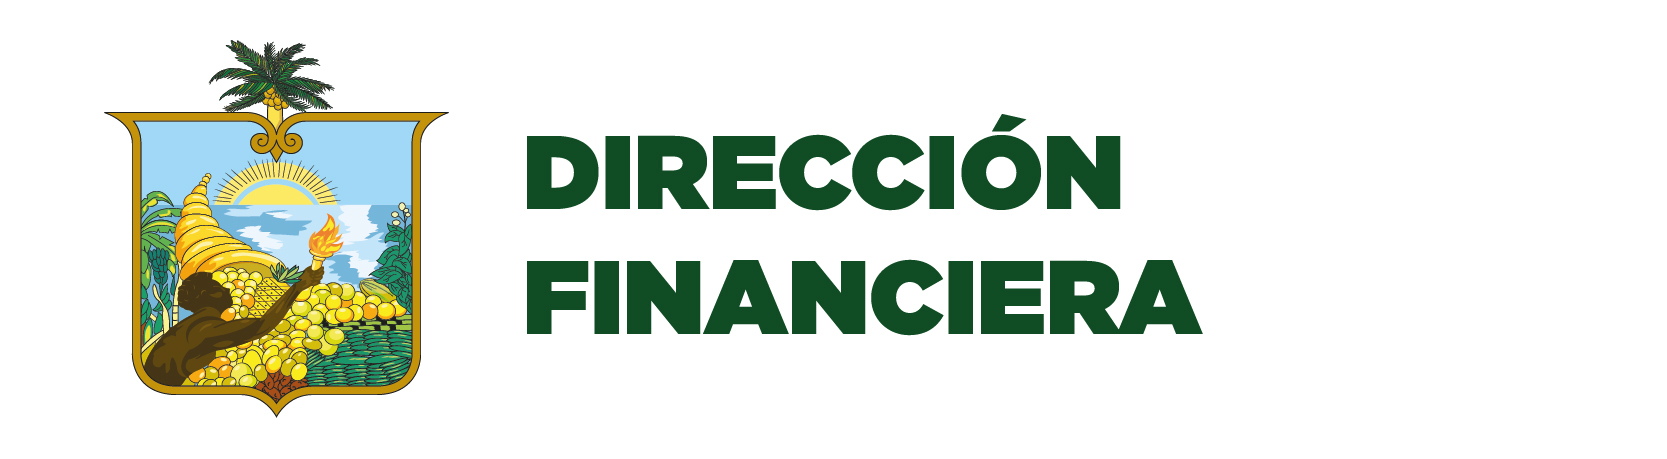 Logo Financiero